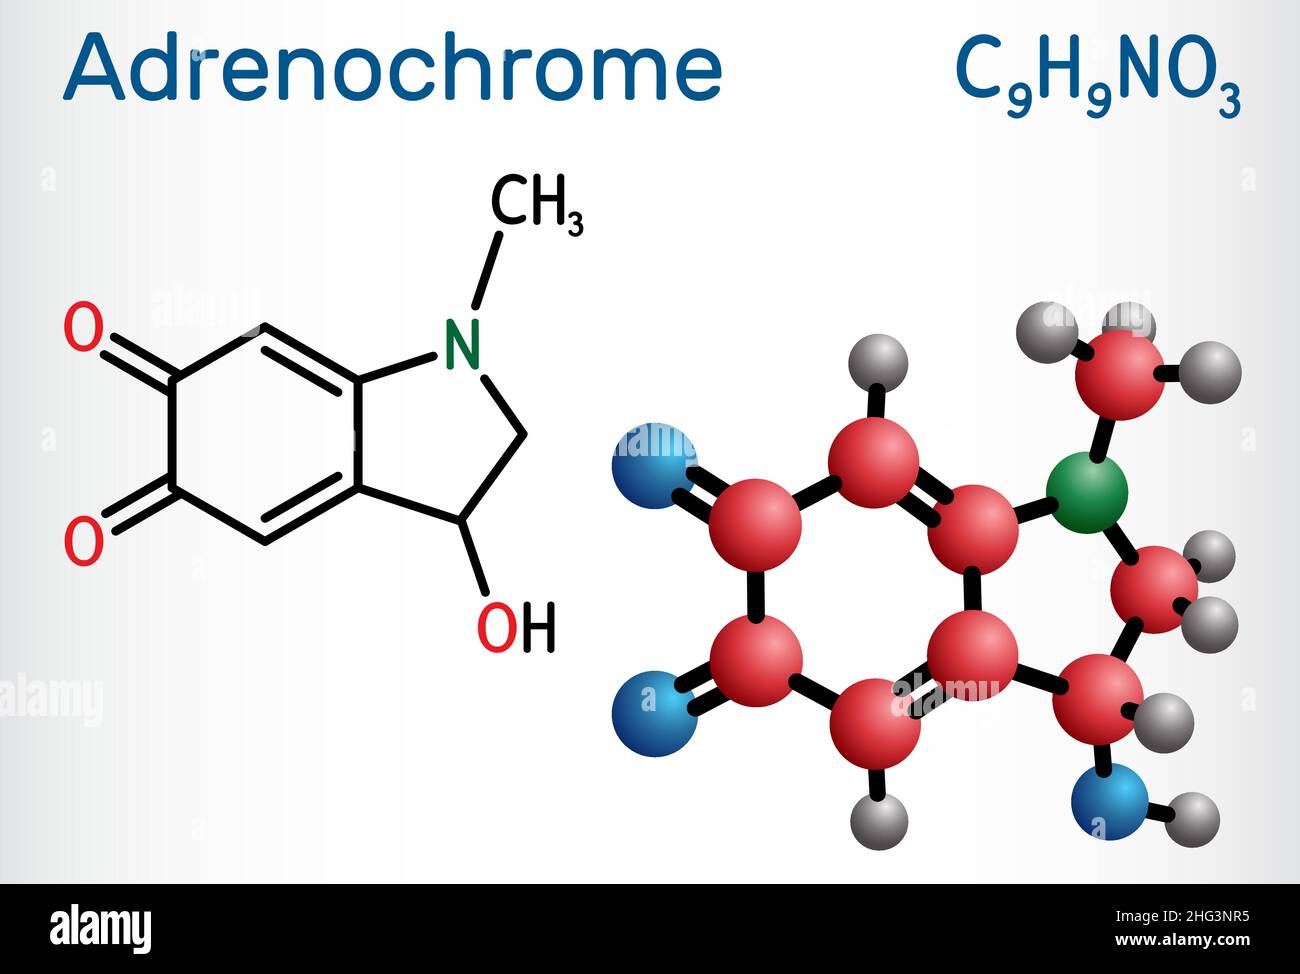 Adrenochrome, Adraxon-Molekül. Es wird durch die Oxidation von Adrenalin produziert. Strukturelle chemische Formel und Molekülmodell. Vektorgrafik Stock Vektor